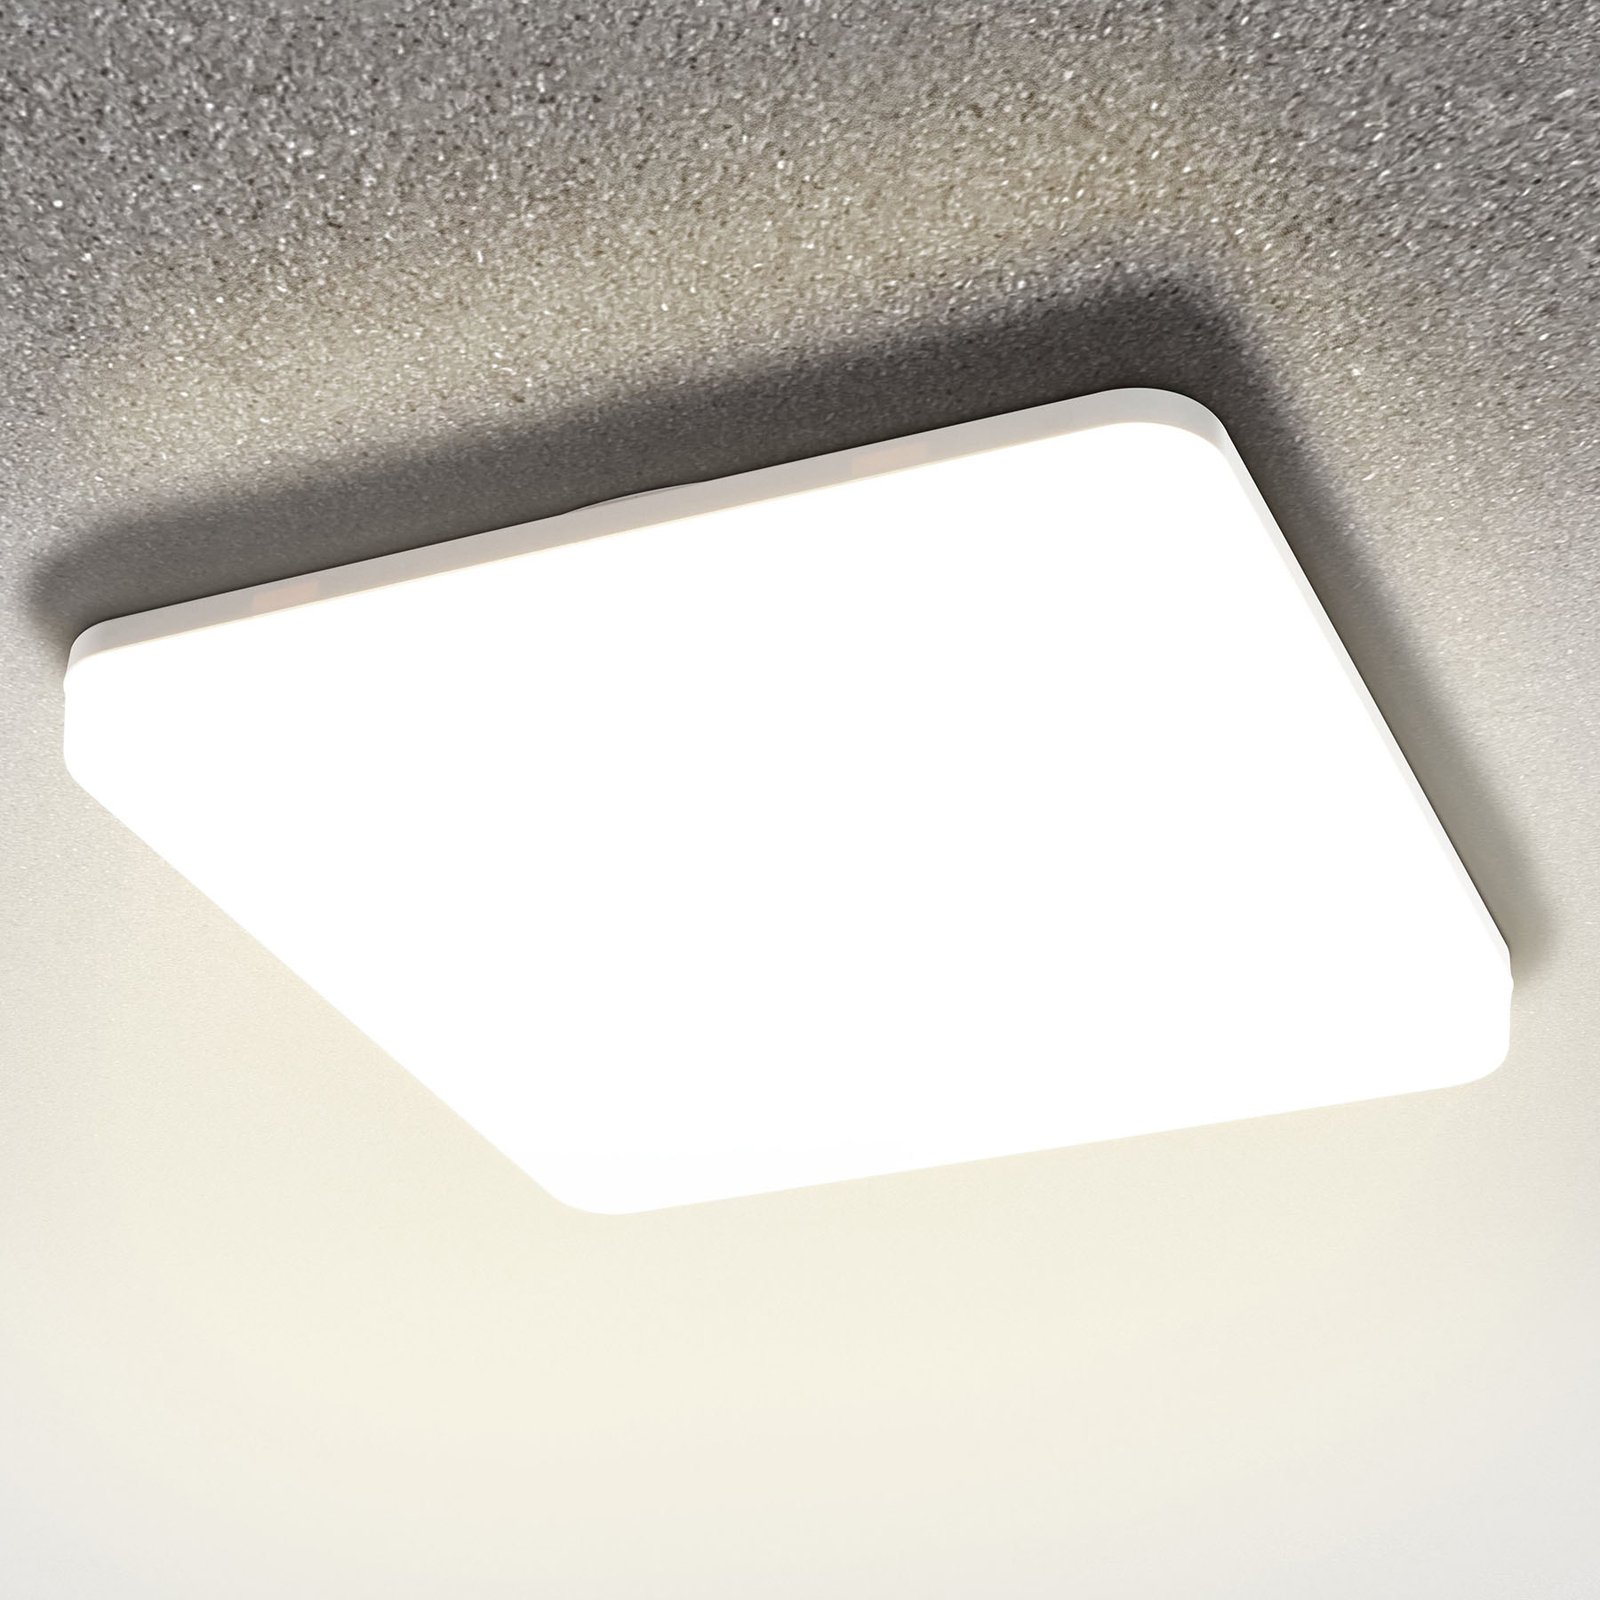 LED plafondlamp Pronto, hoekig, 33 x 33 cm